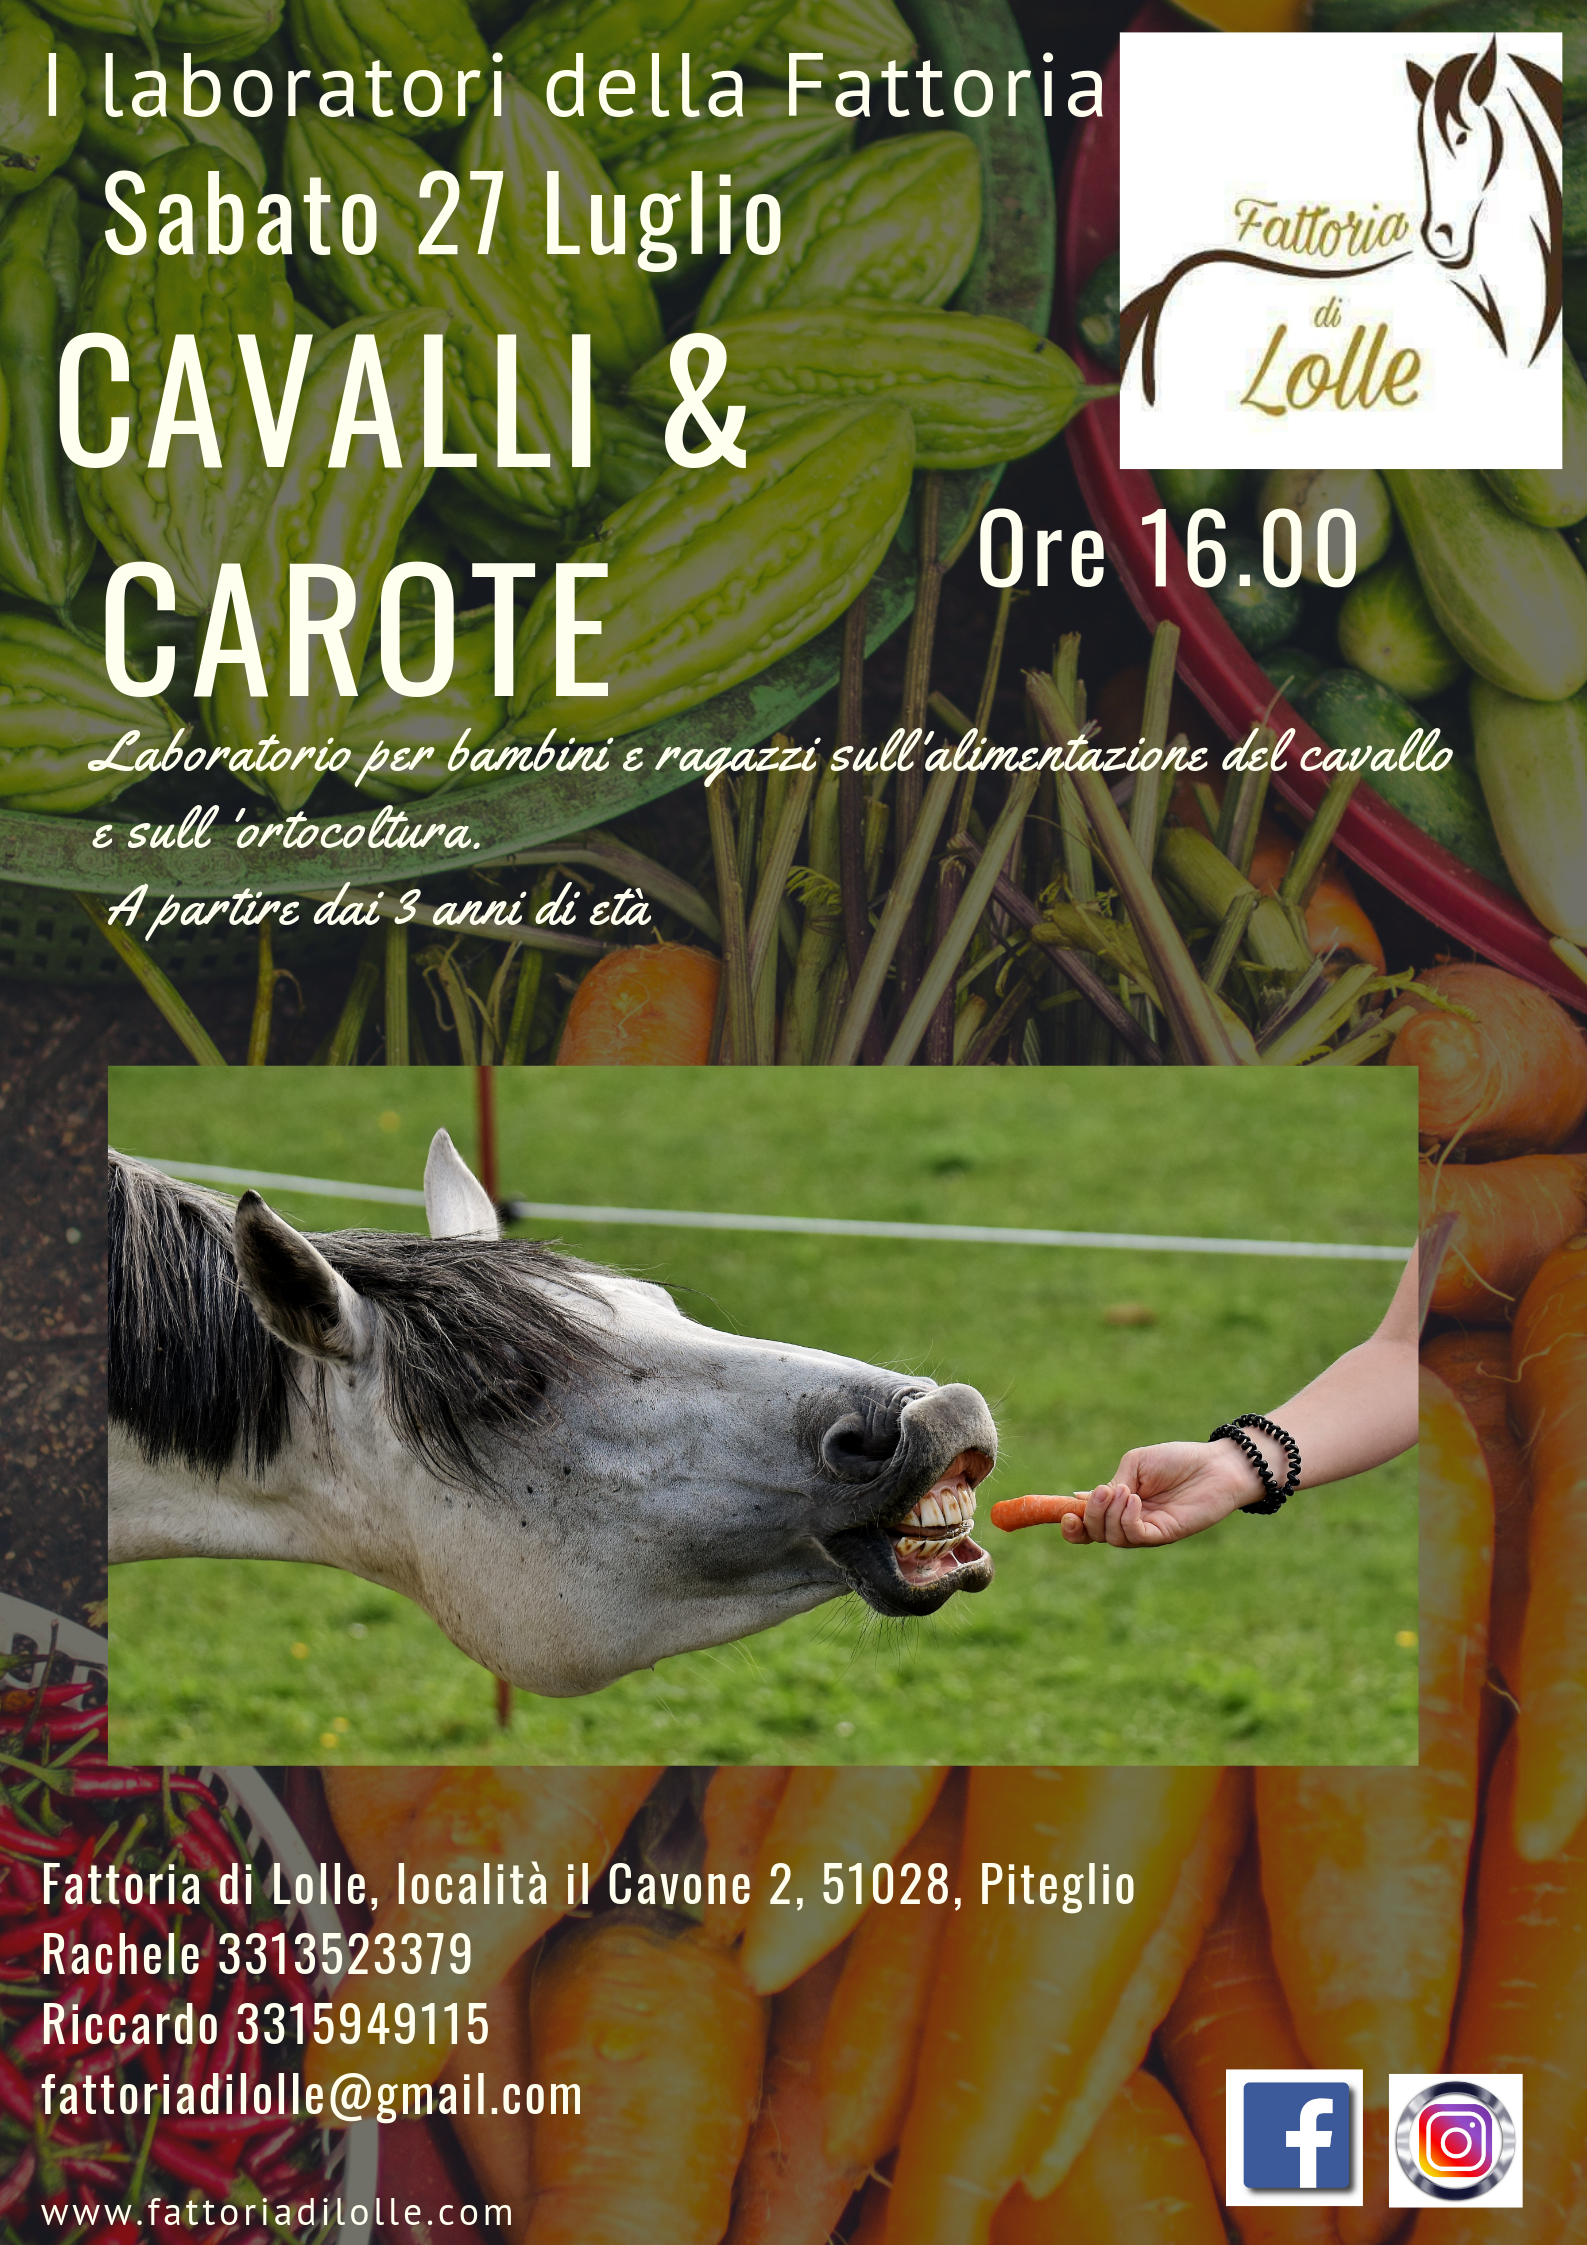 Cavalli & Carote-Workshop sull’ortocoltura